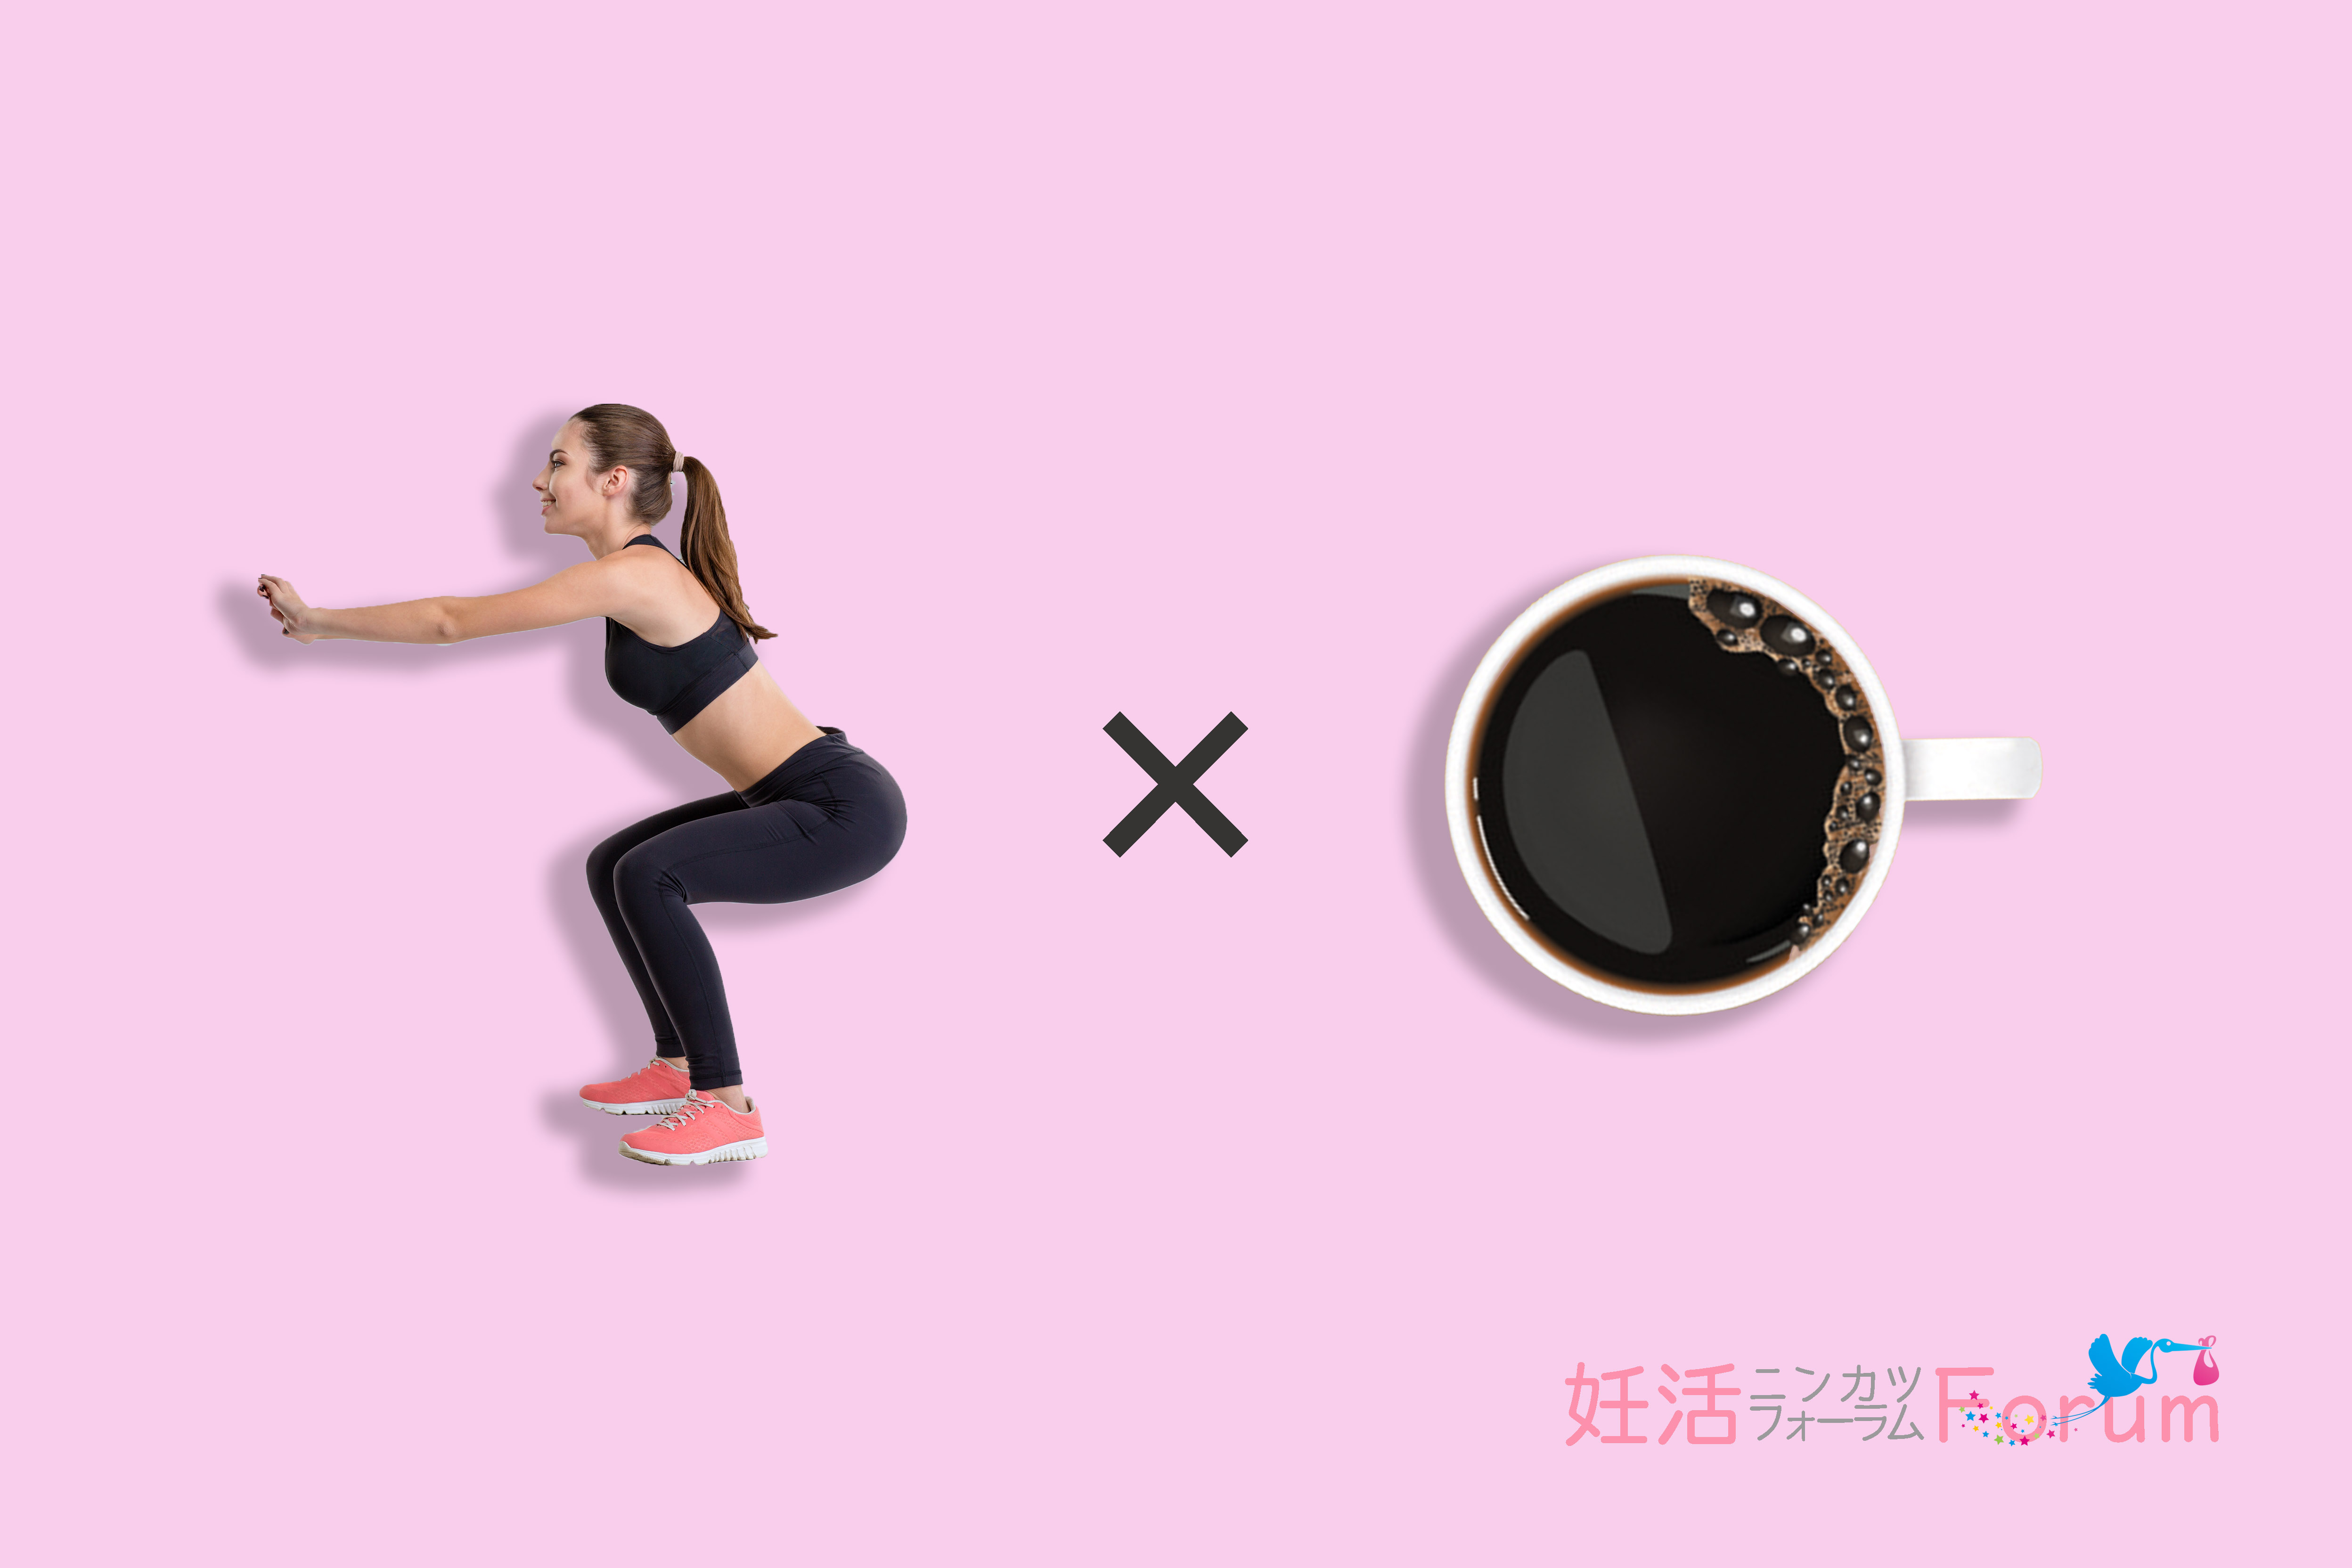 体重10キロ減を目指す妊活前の簡単なダイエット☆おすすめは「運動×コーヒー(カフェイン)」の効果